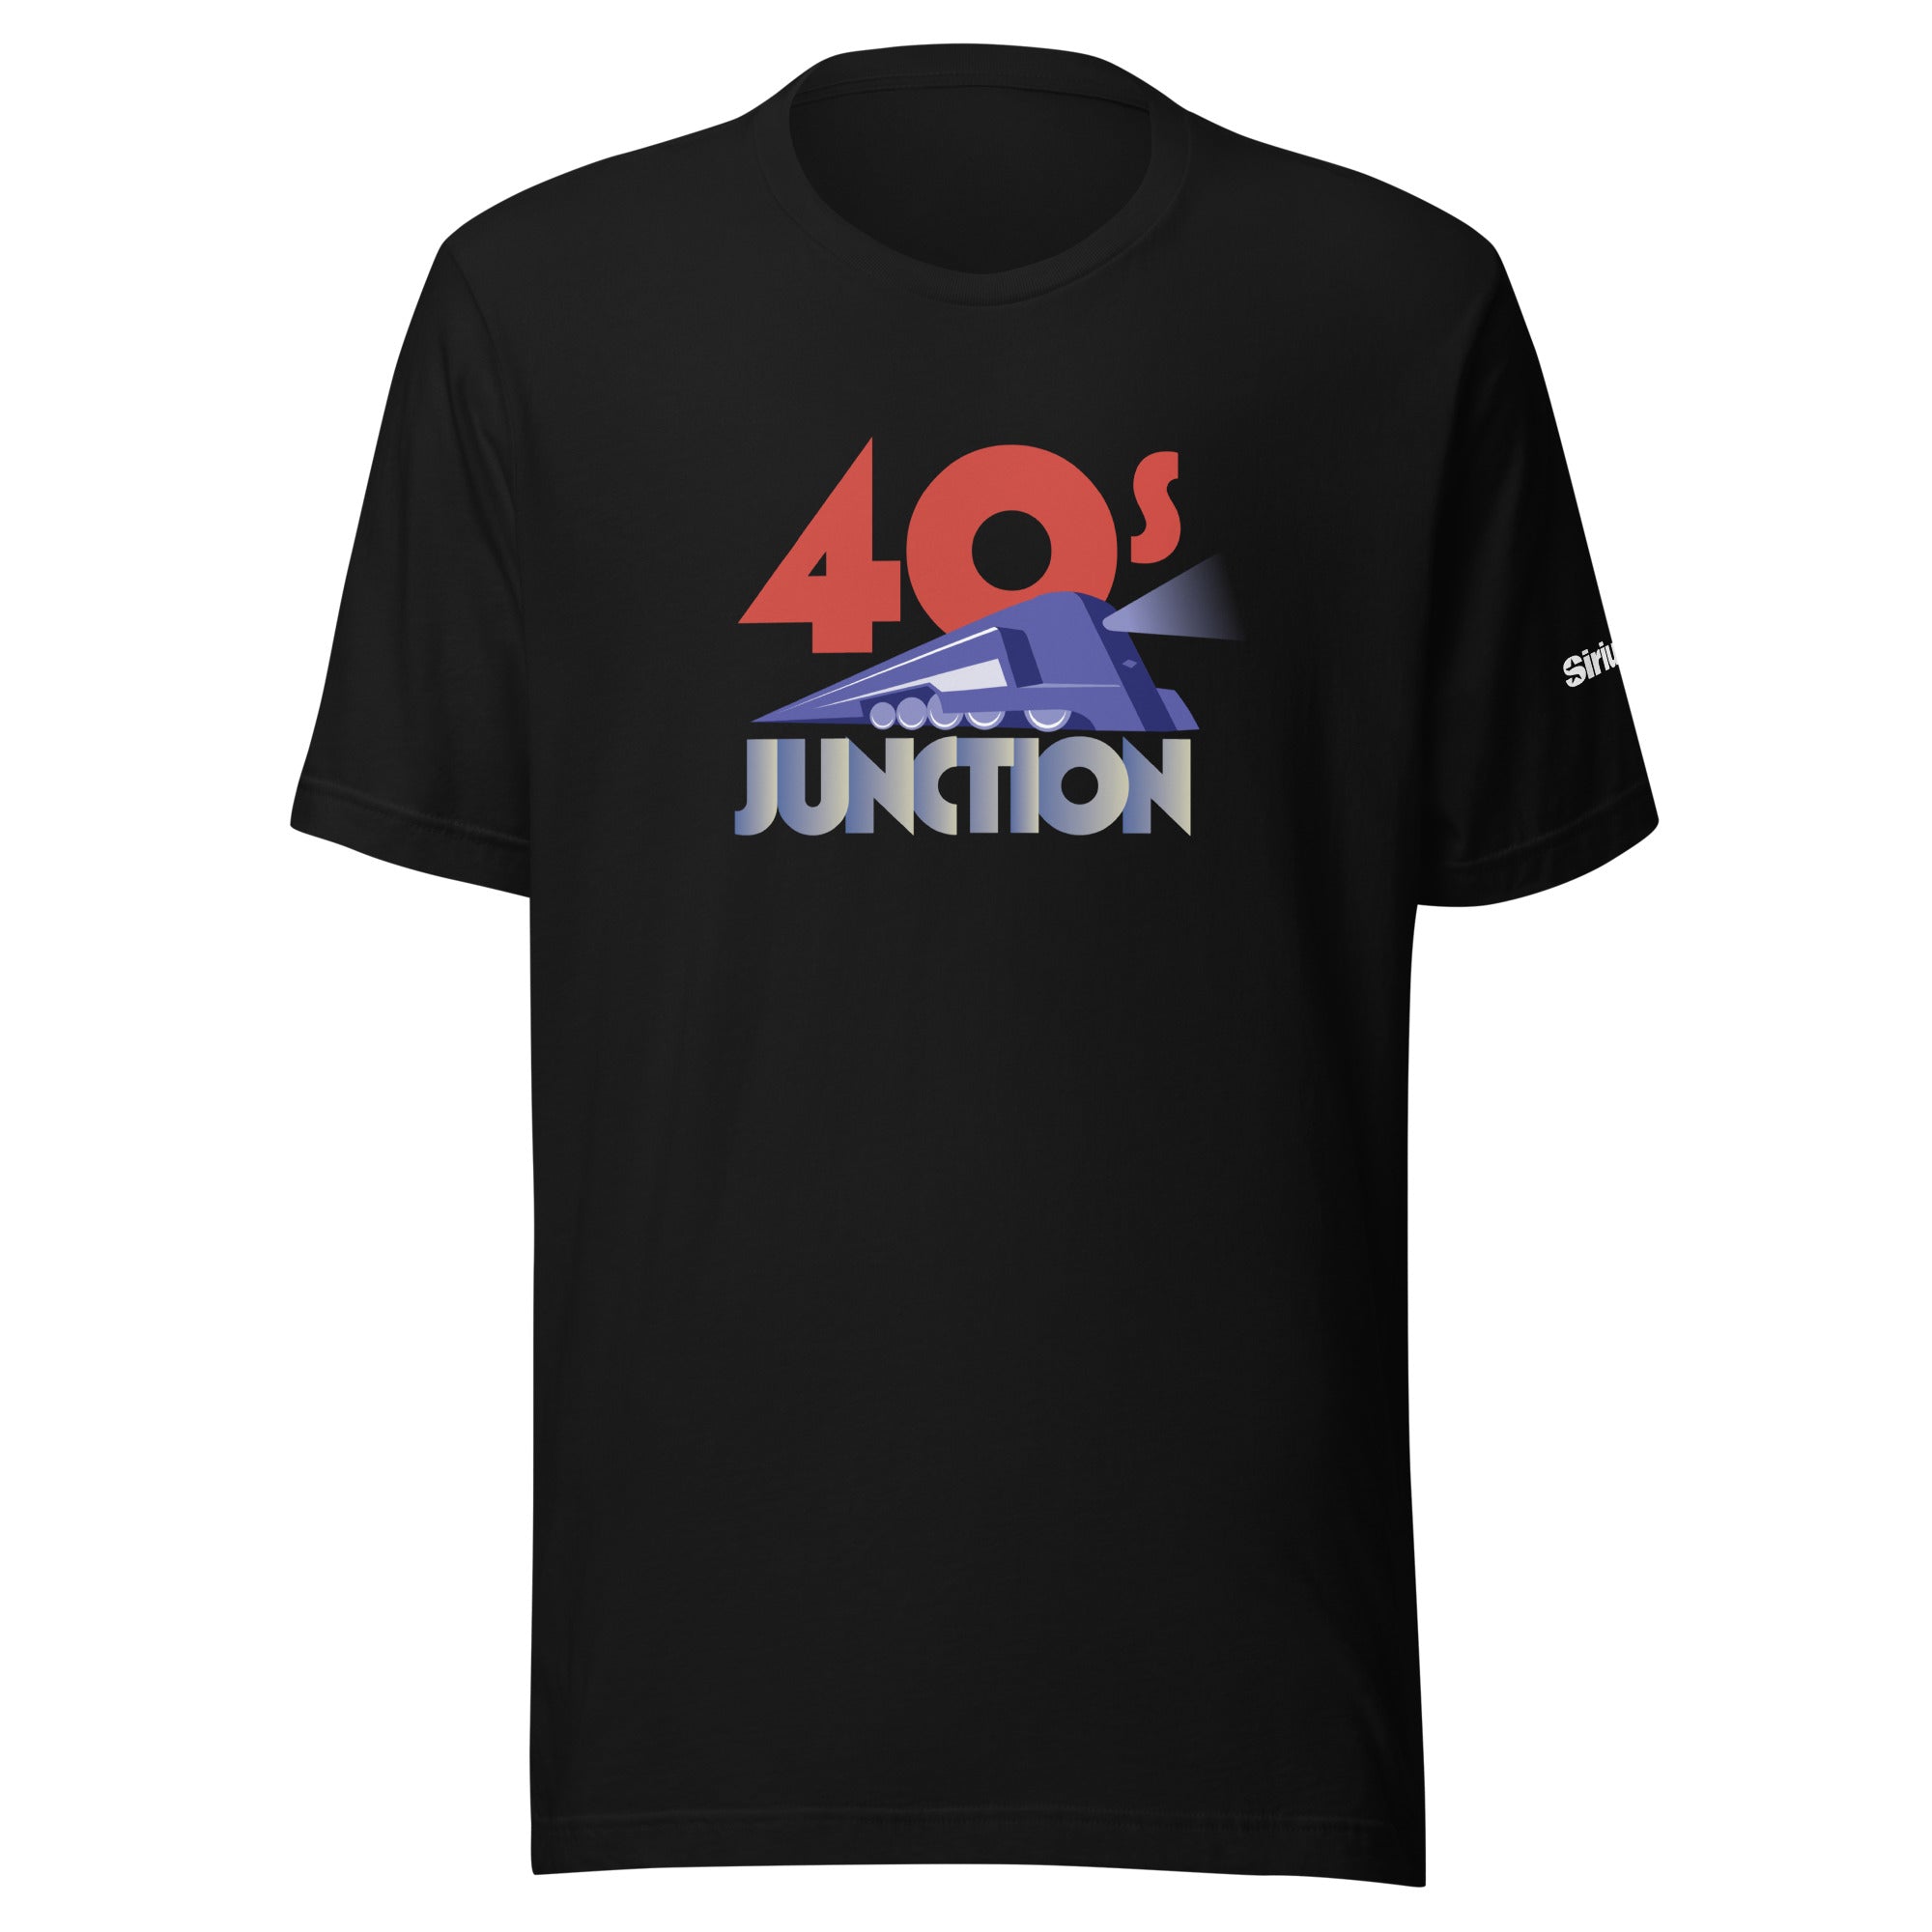 40s Junction: T-shirt (Black)